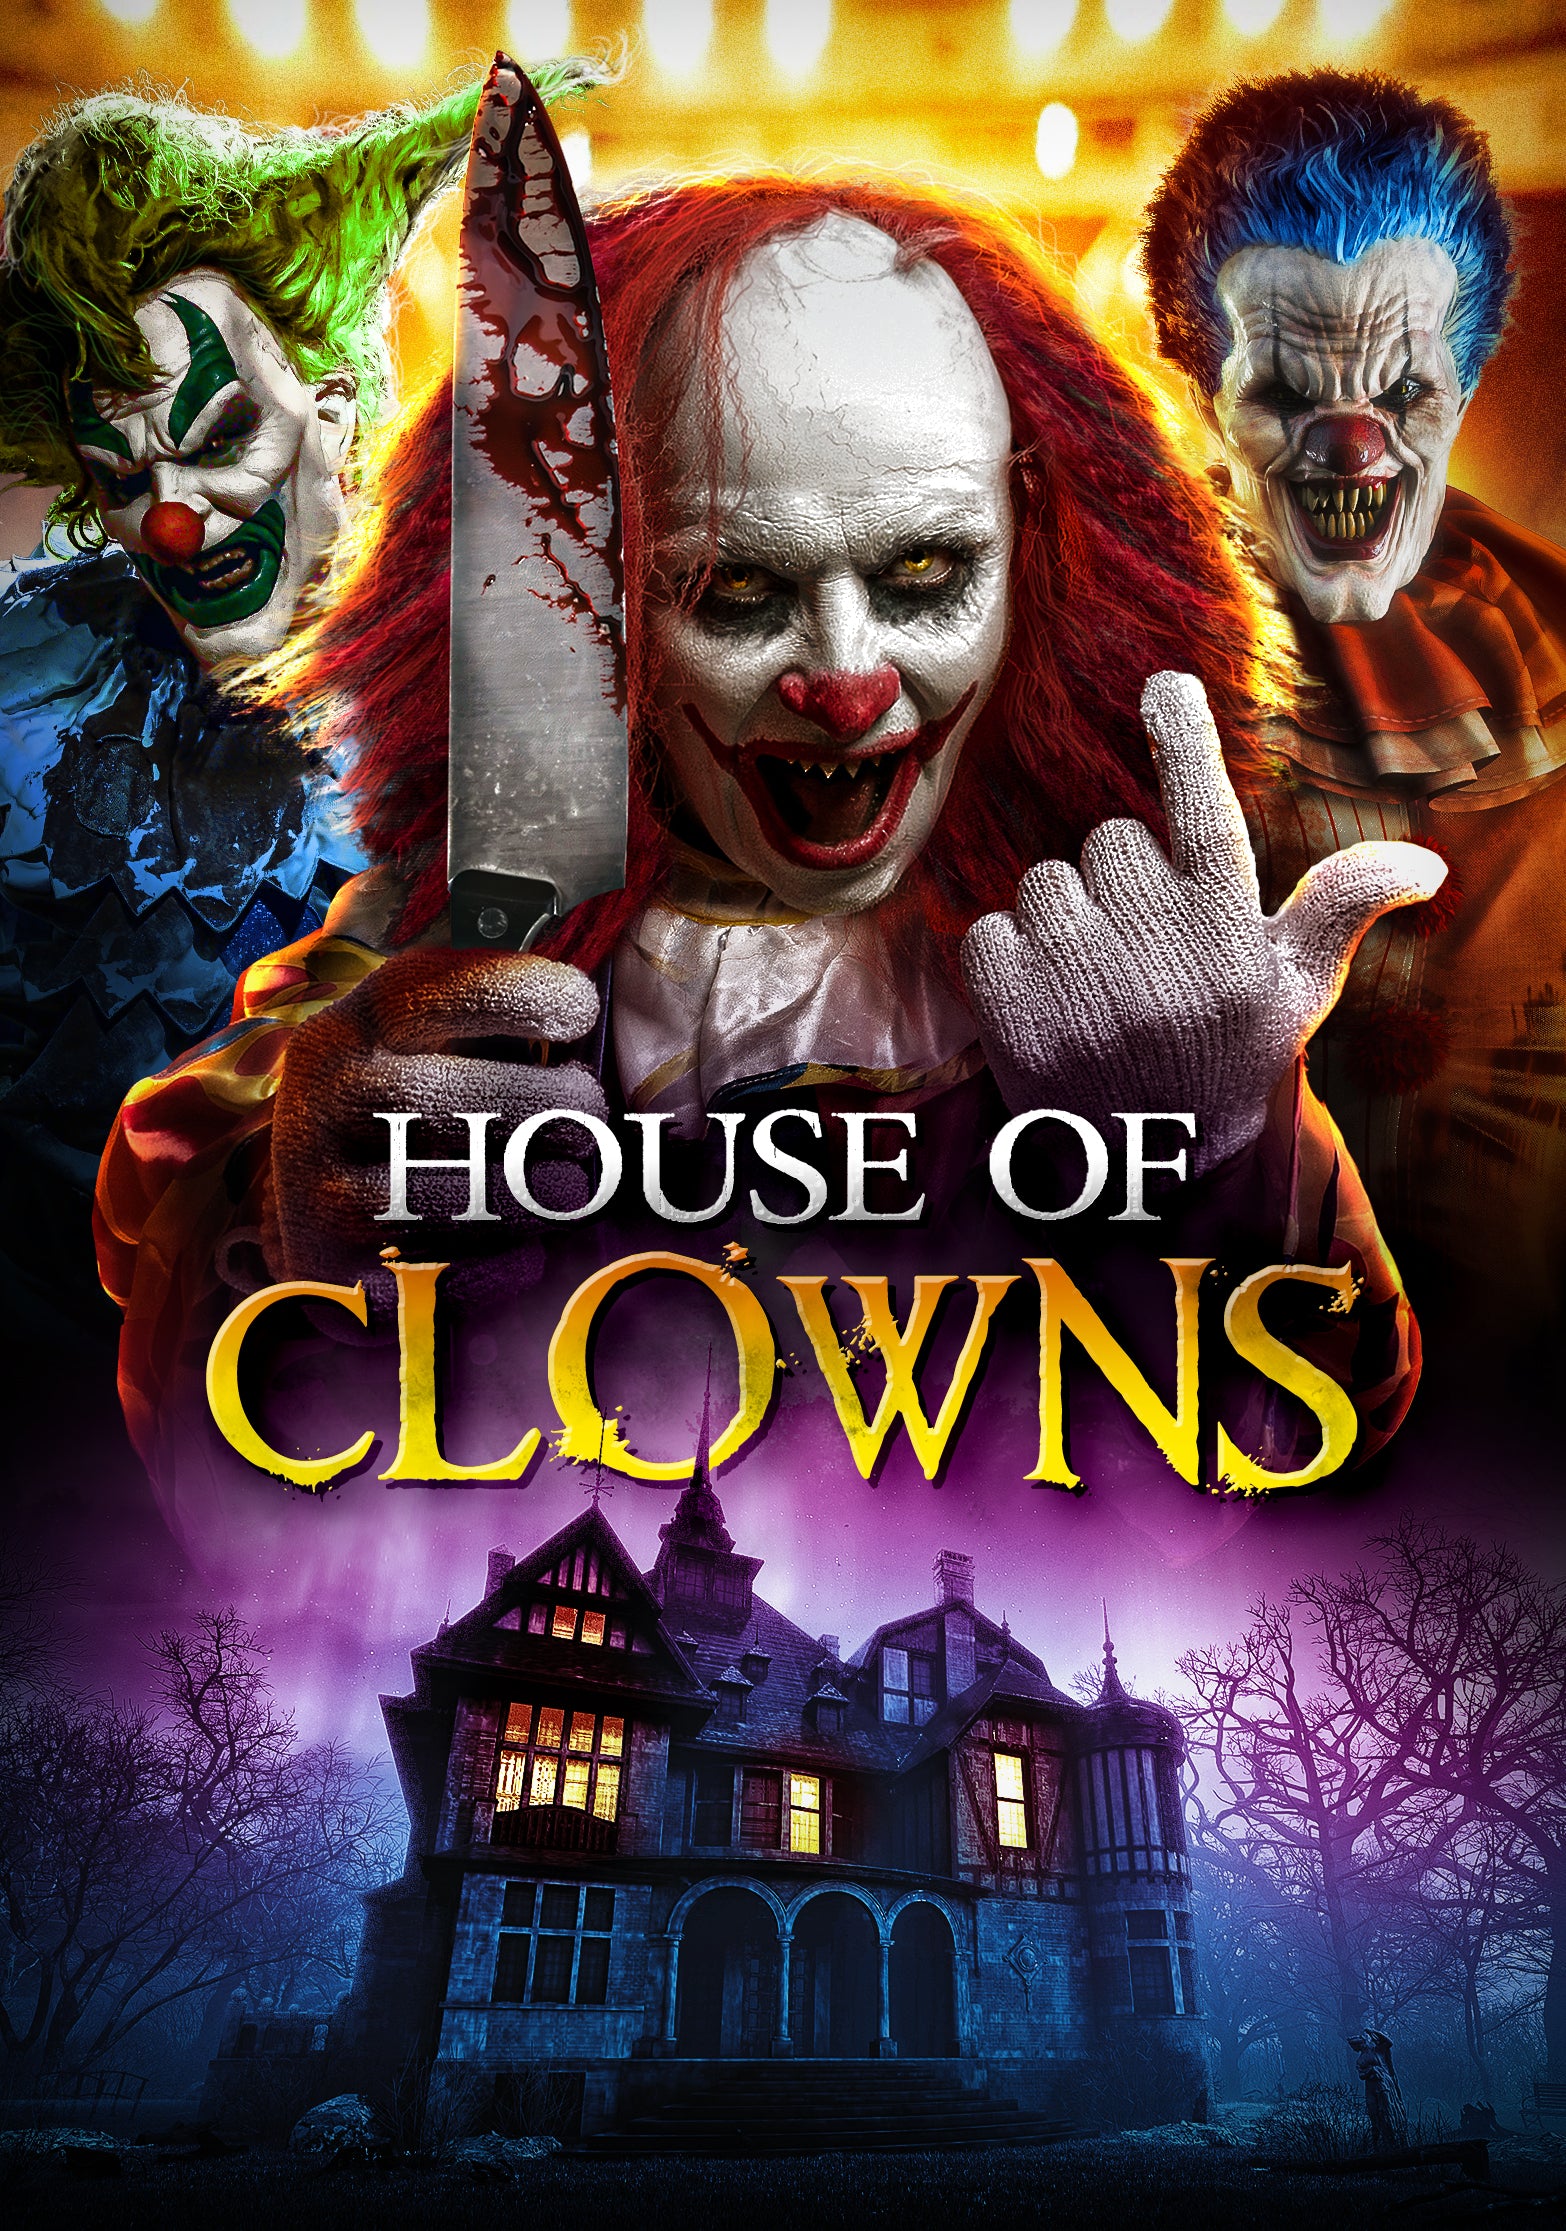 HOUSE OF CLOWNS DVD